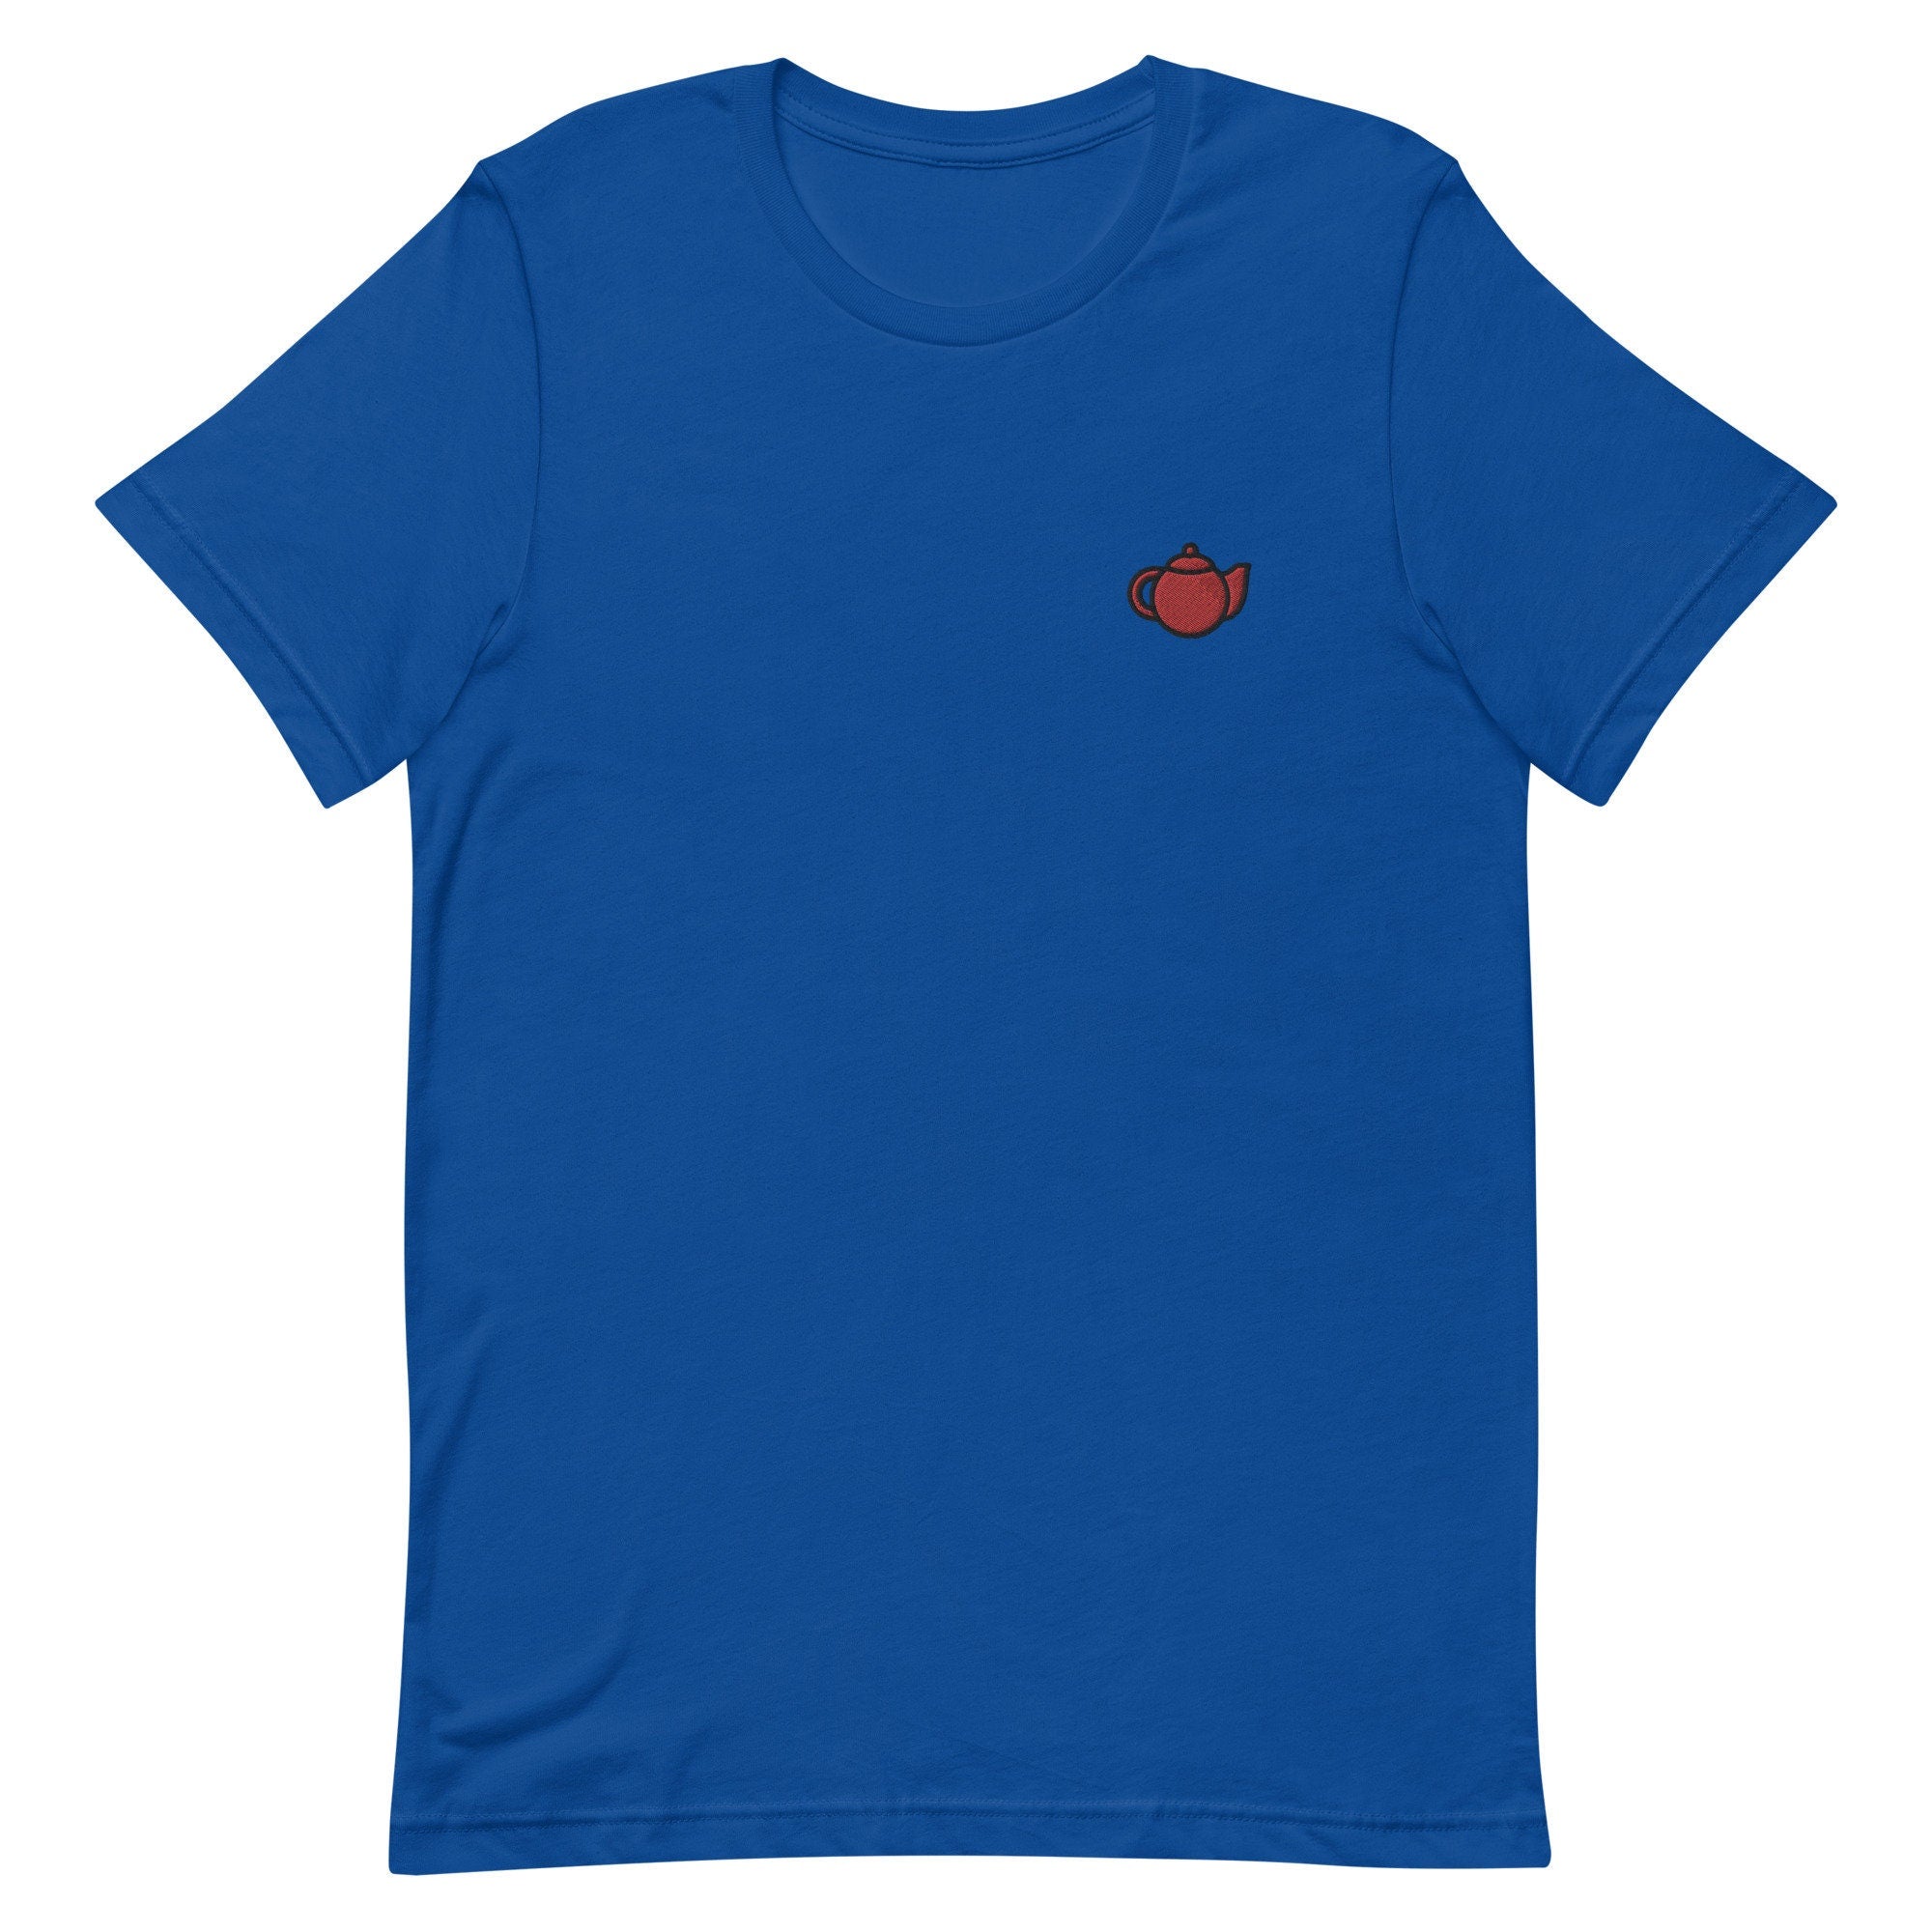 Teapot Premium Men's T-Shirt, Embroidered Men's T-Shirt Gift for Boyfriend, Men's Short Sleeve Shirt - Multiple Colors